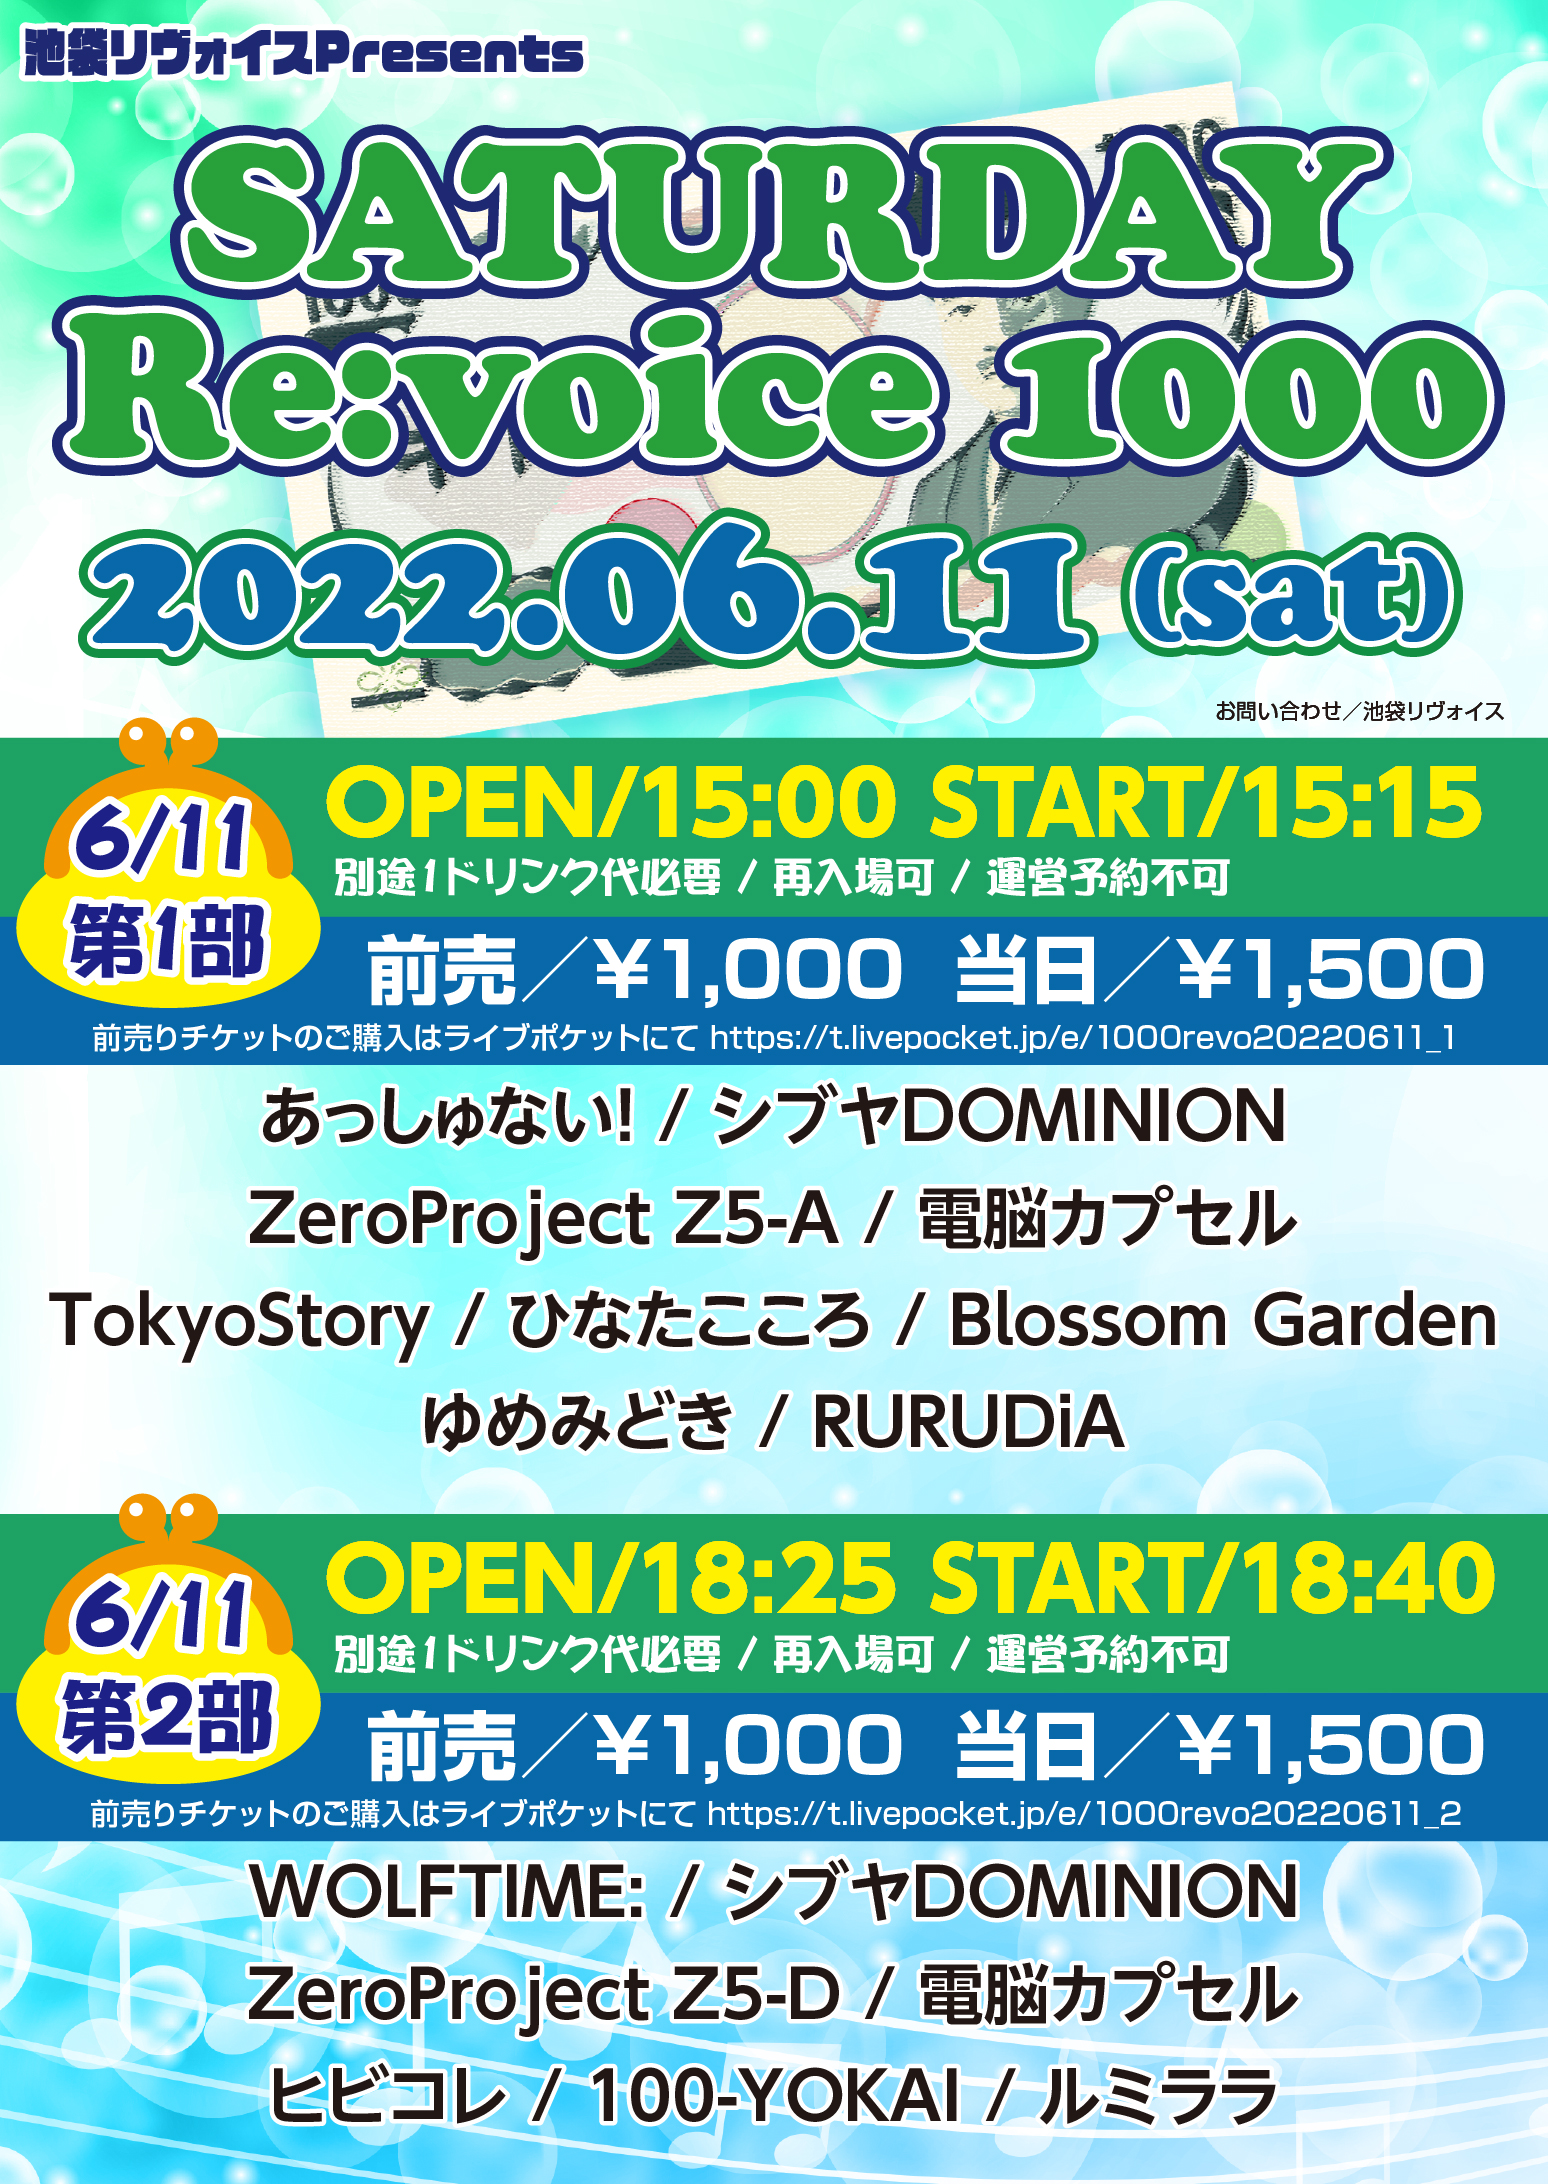 【第二部】SATURDAY Re:voice 1000